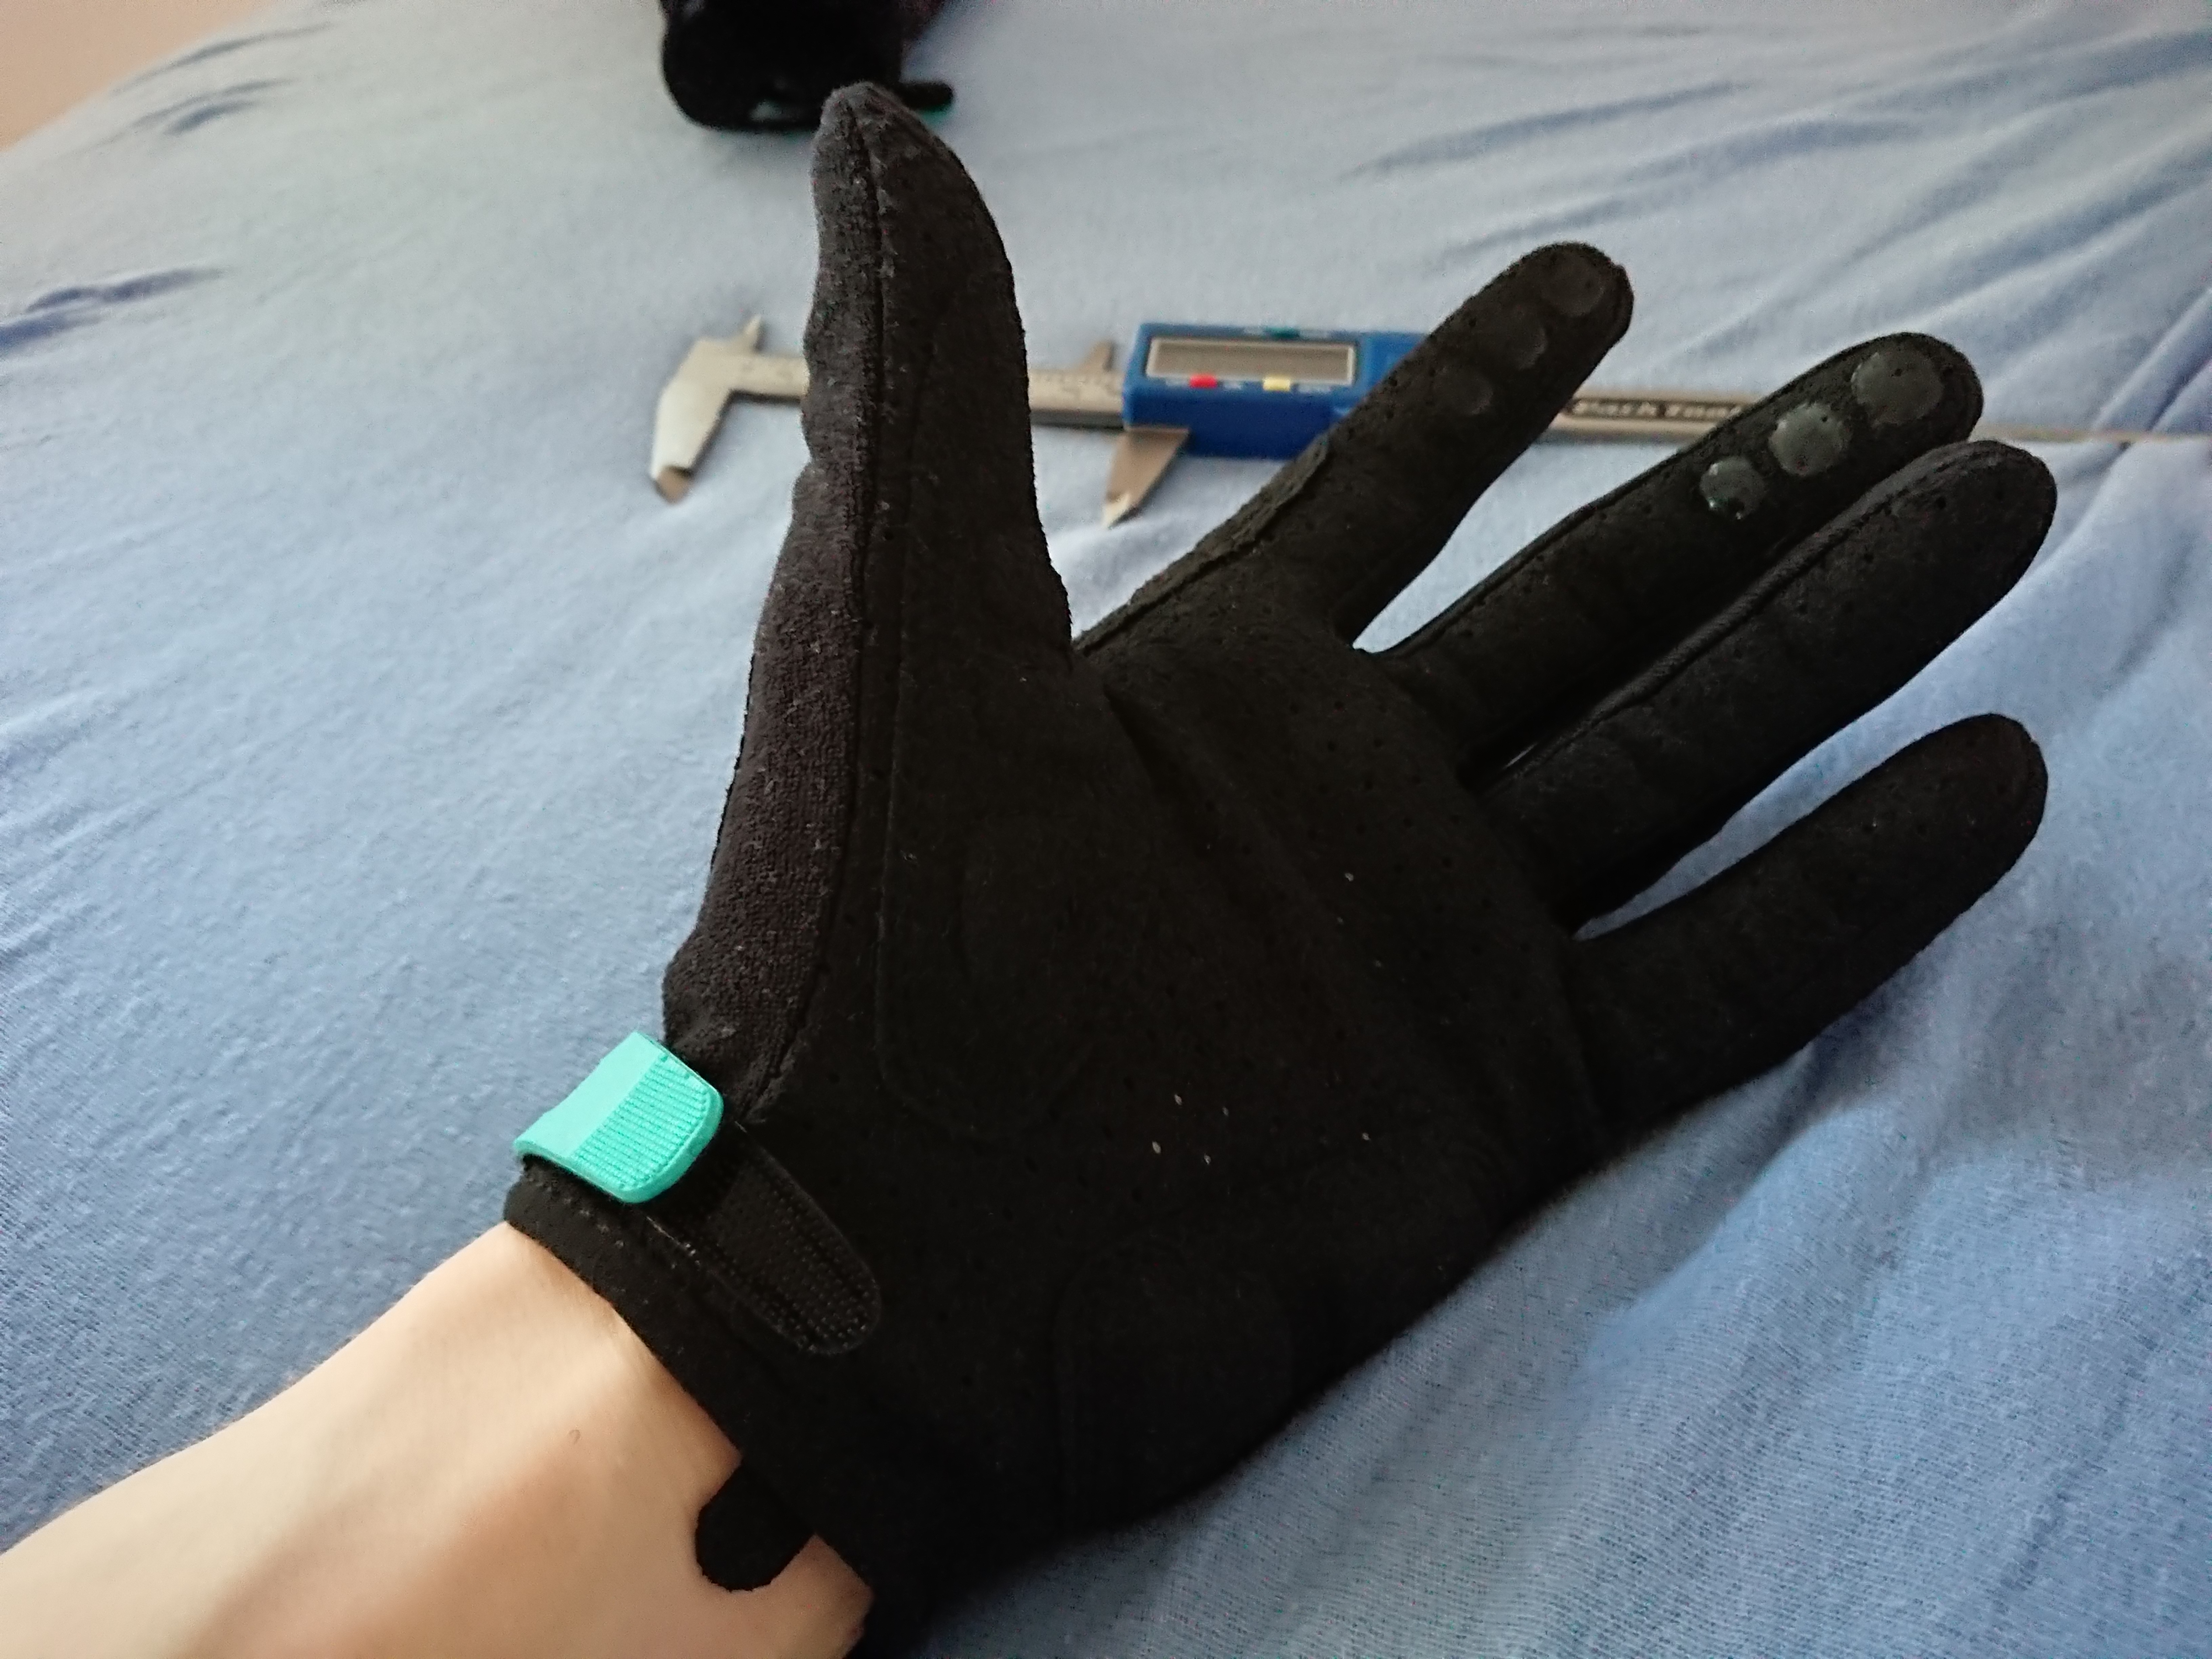 New glove